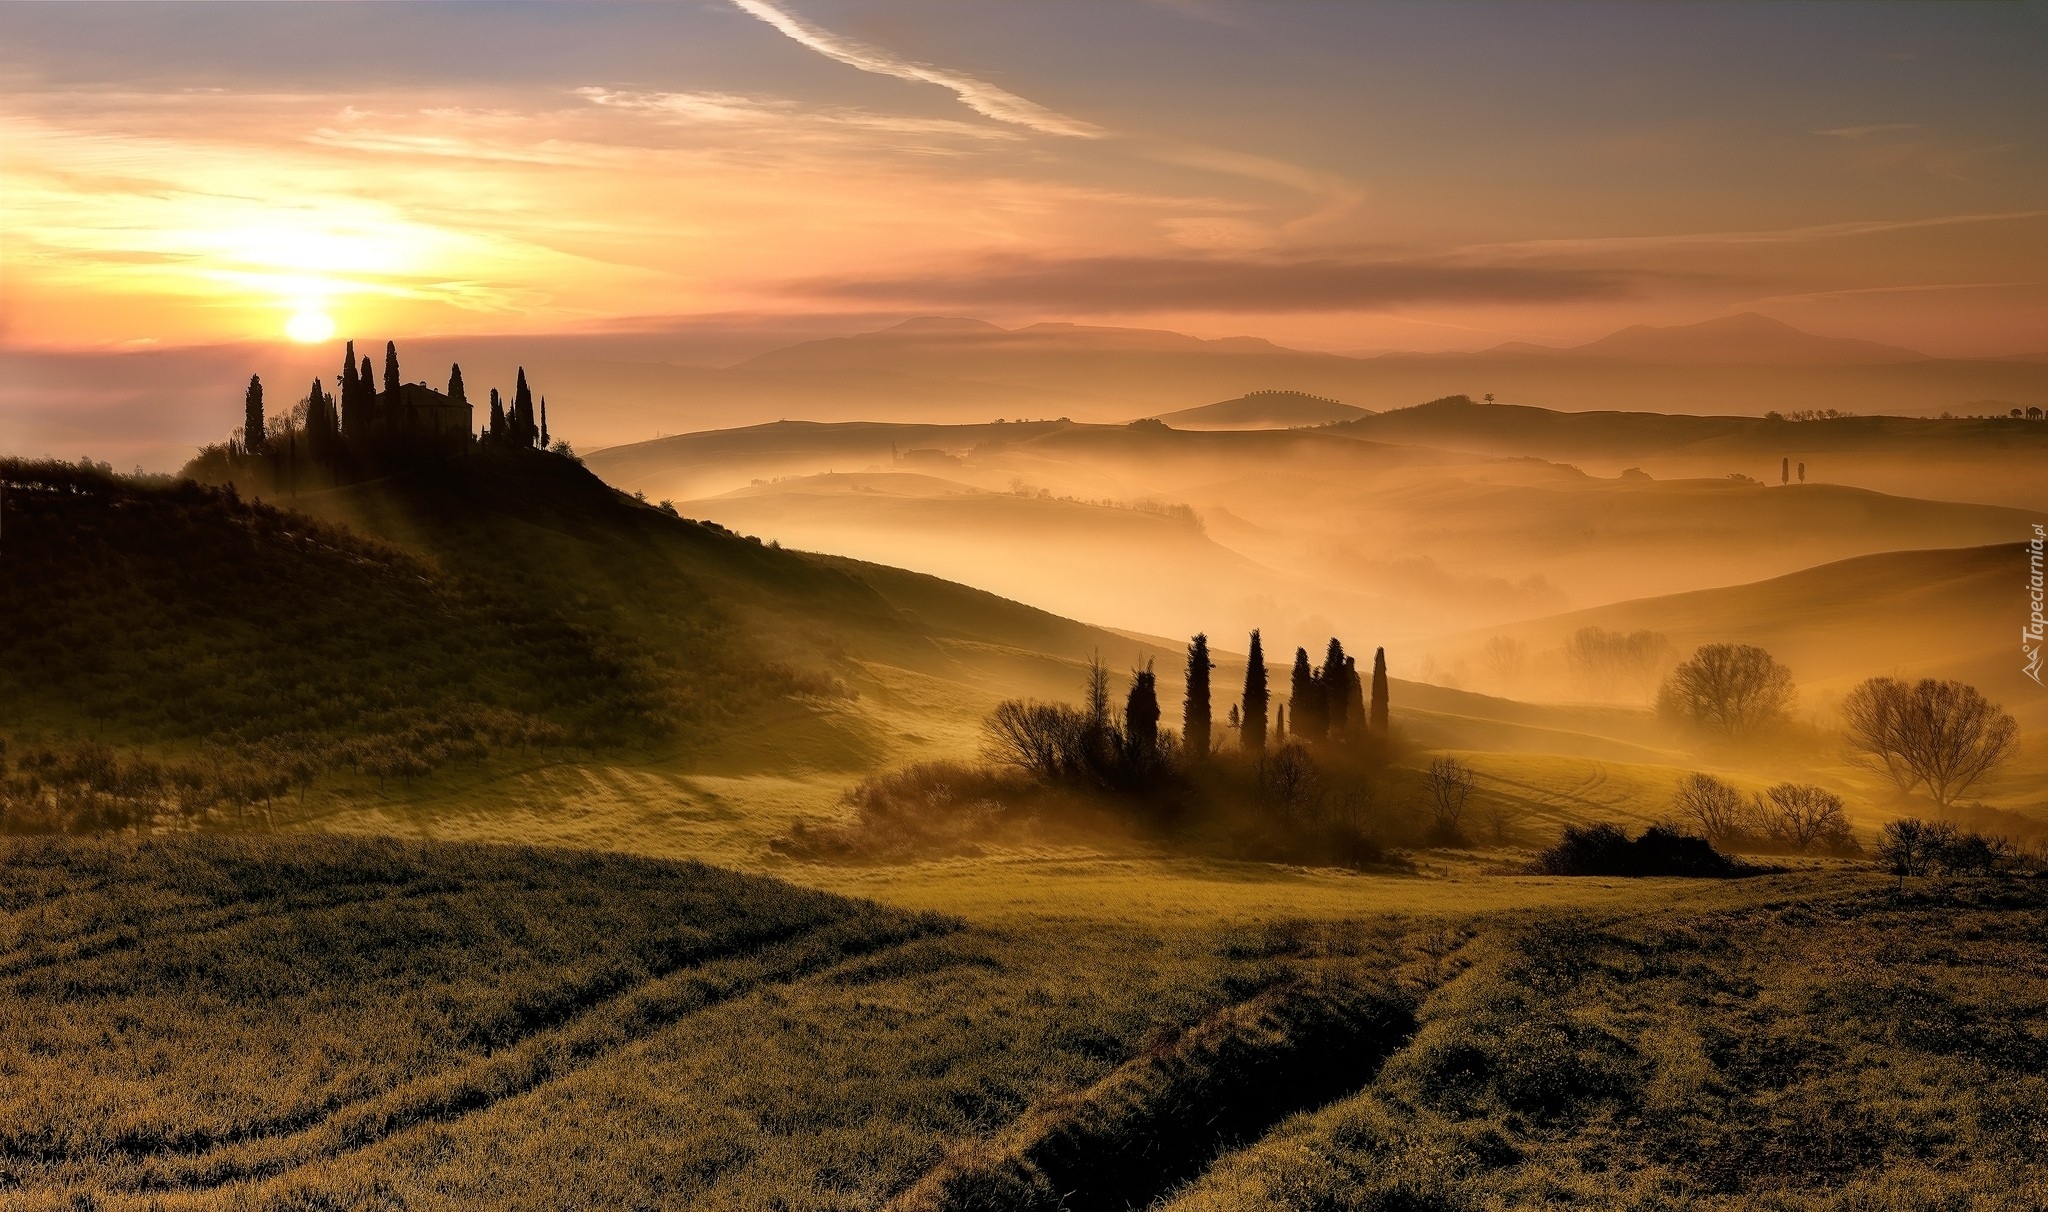 Włochy, Tosaknia, Wzgórza, Mgła, Wschód słońca, Drzewa